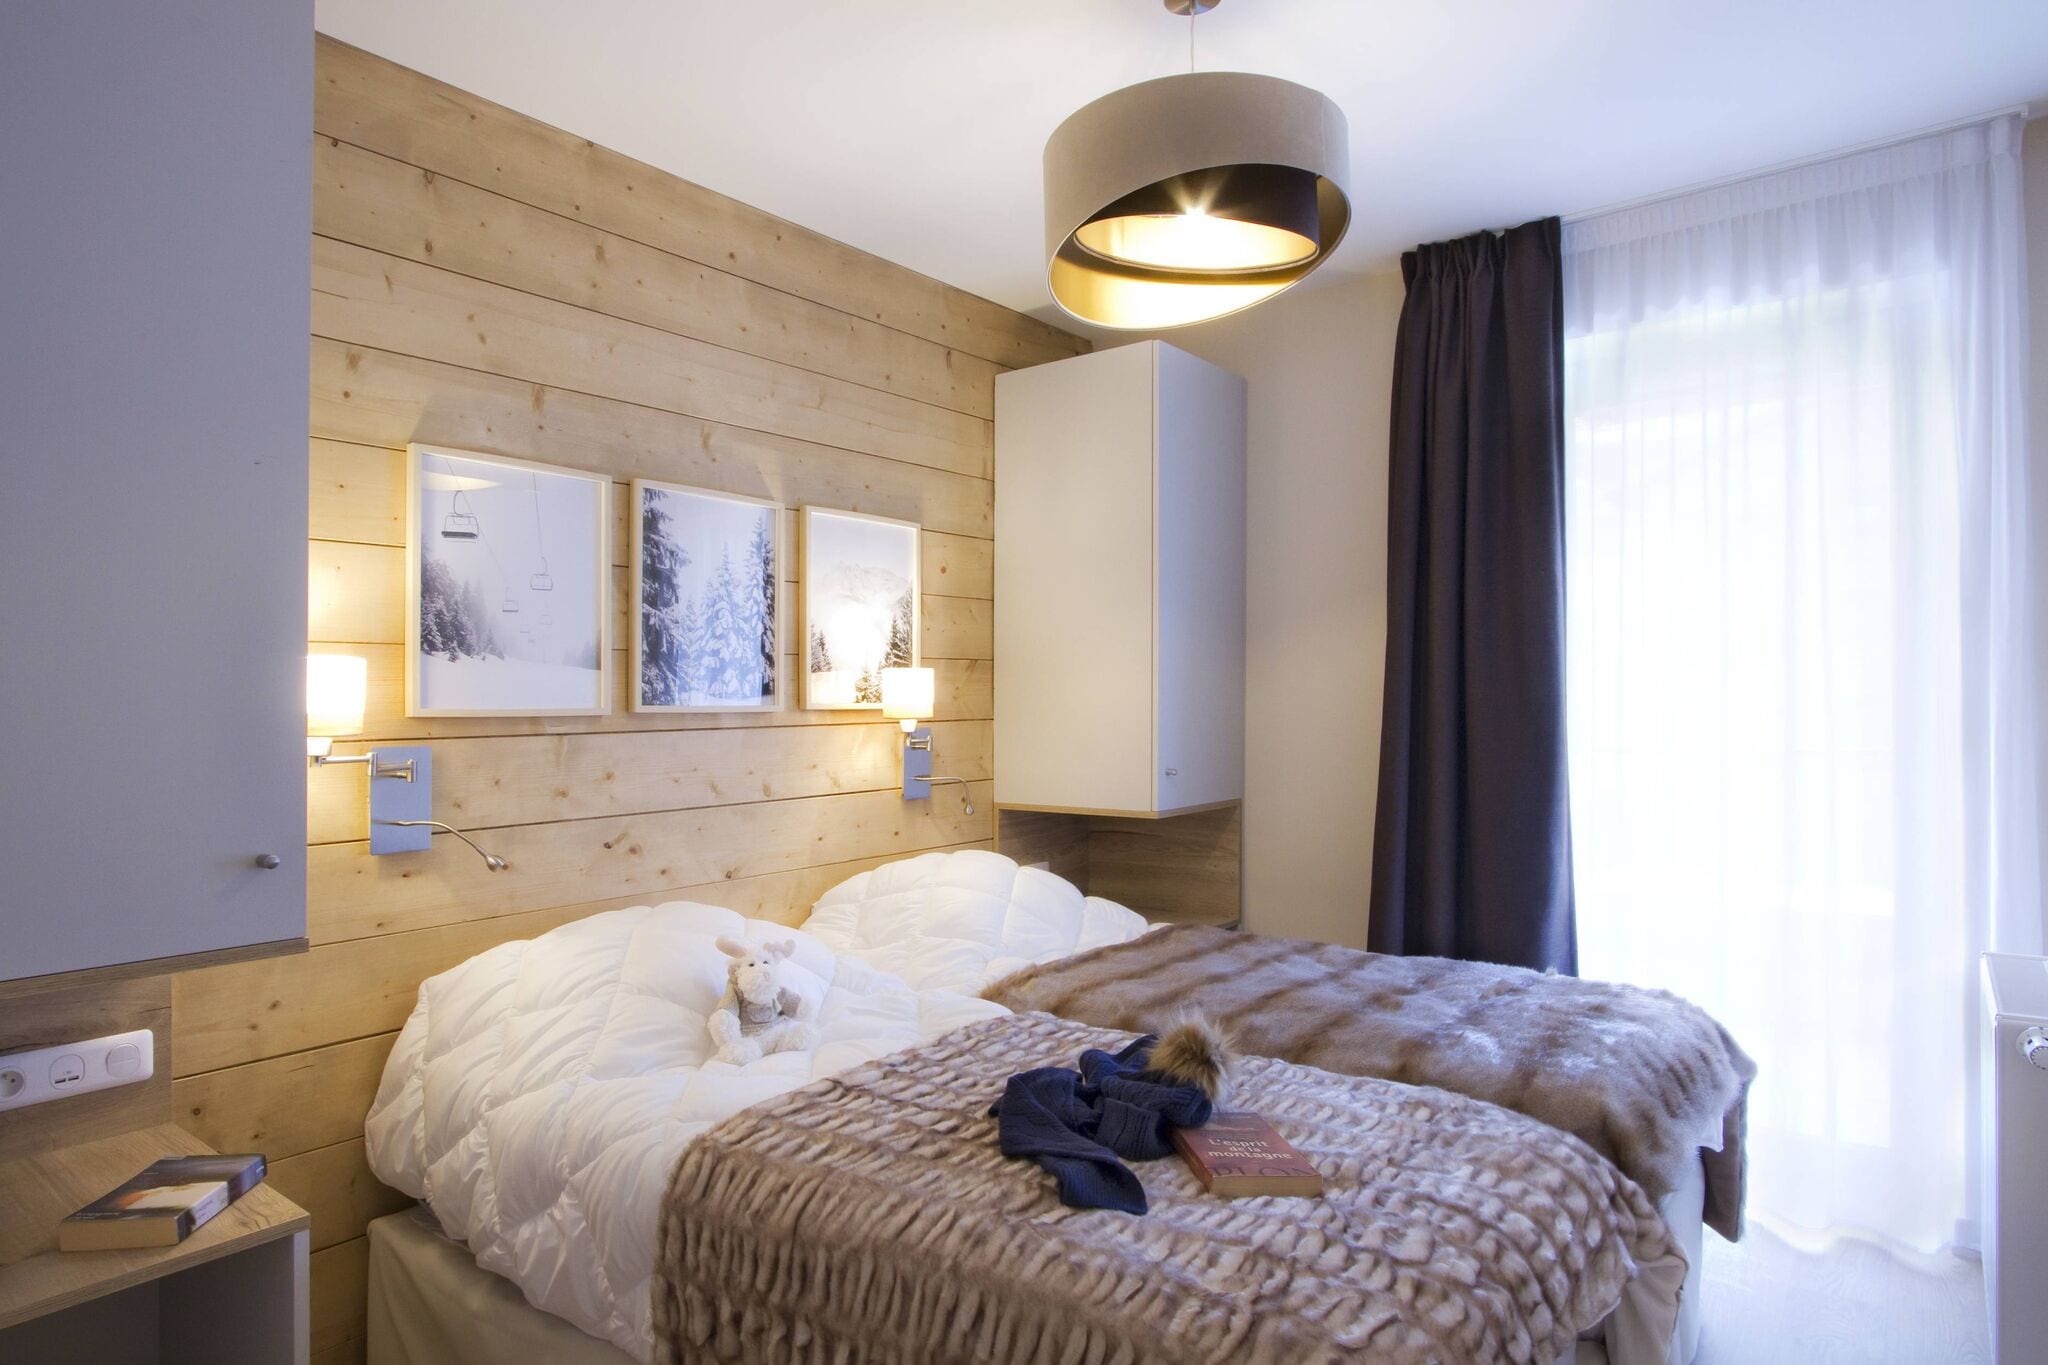 Moderne Wohning mit Schlafkabine in Alpe d'Huez